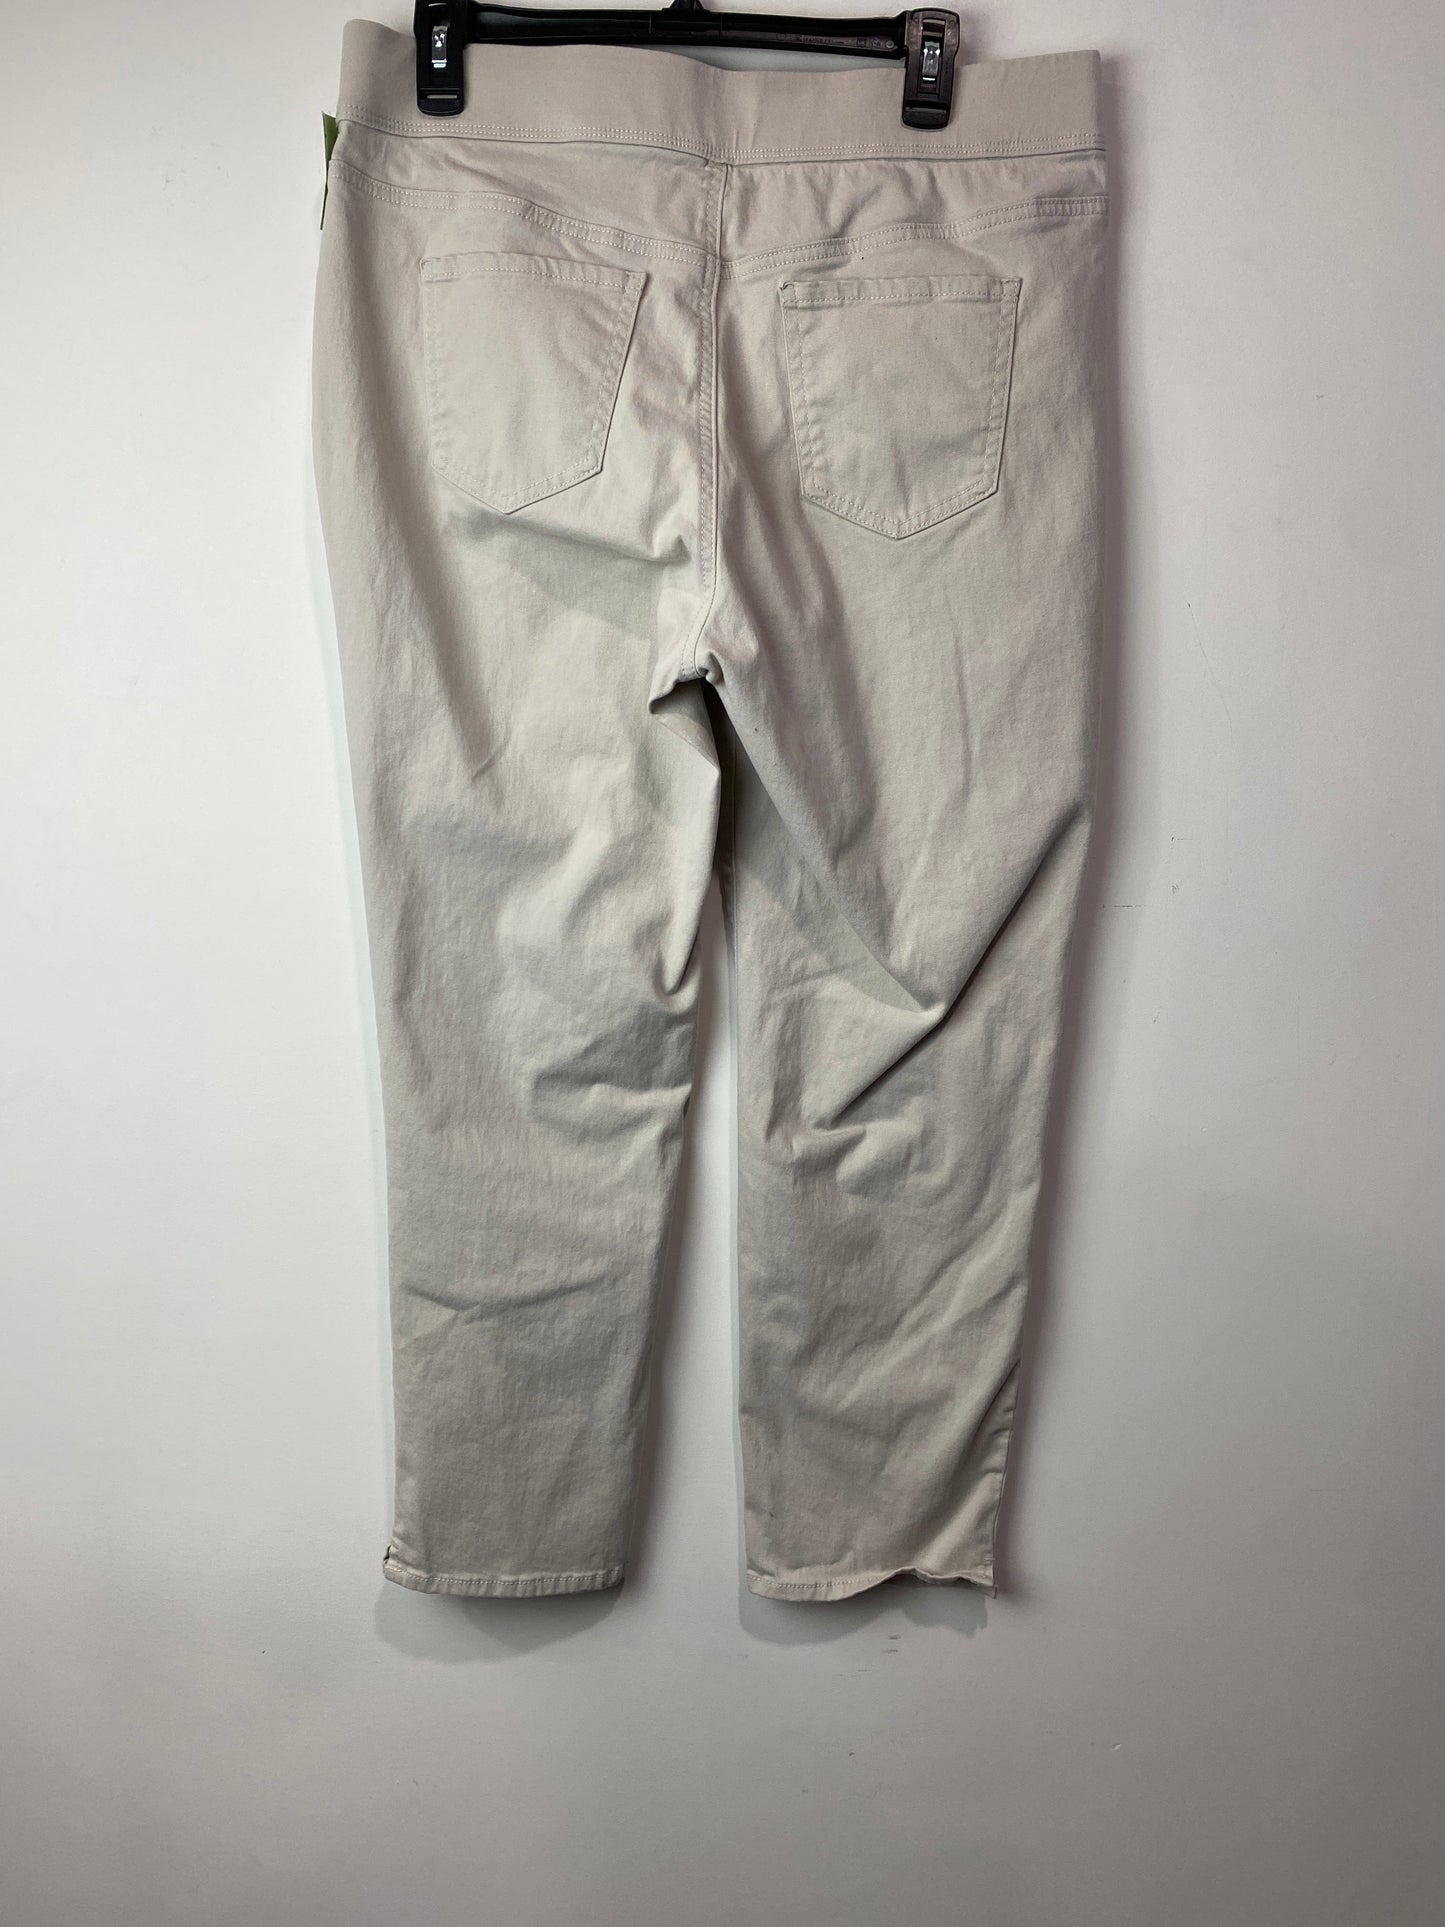 Pants Other By Gloria Vanderbilt  Size: 12